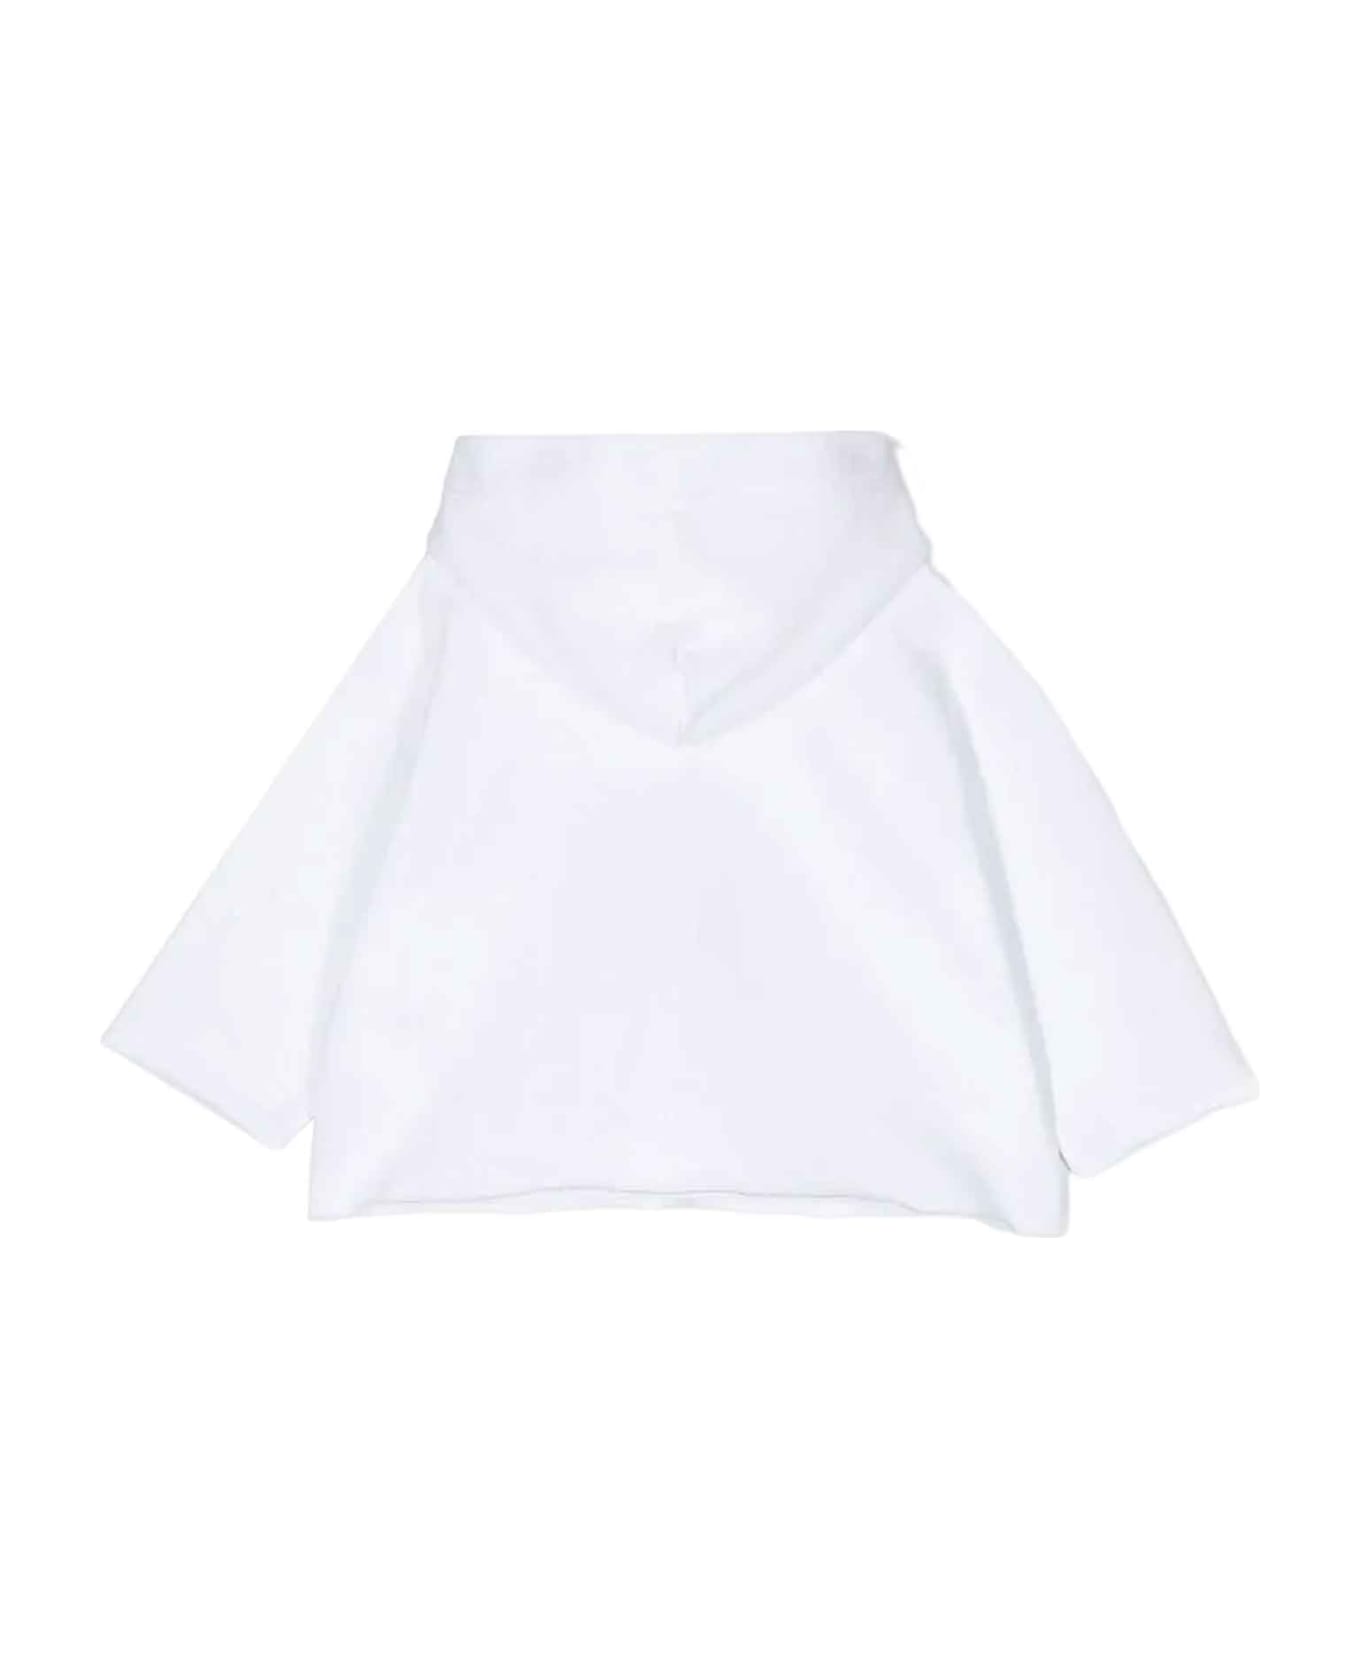 MM6 Maison Margiela White Sweatshirt Unisex - Bianco